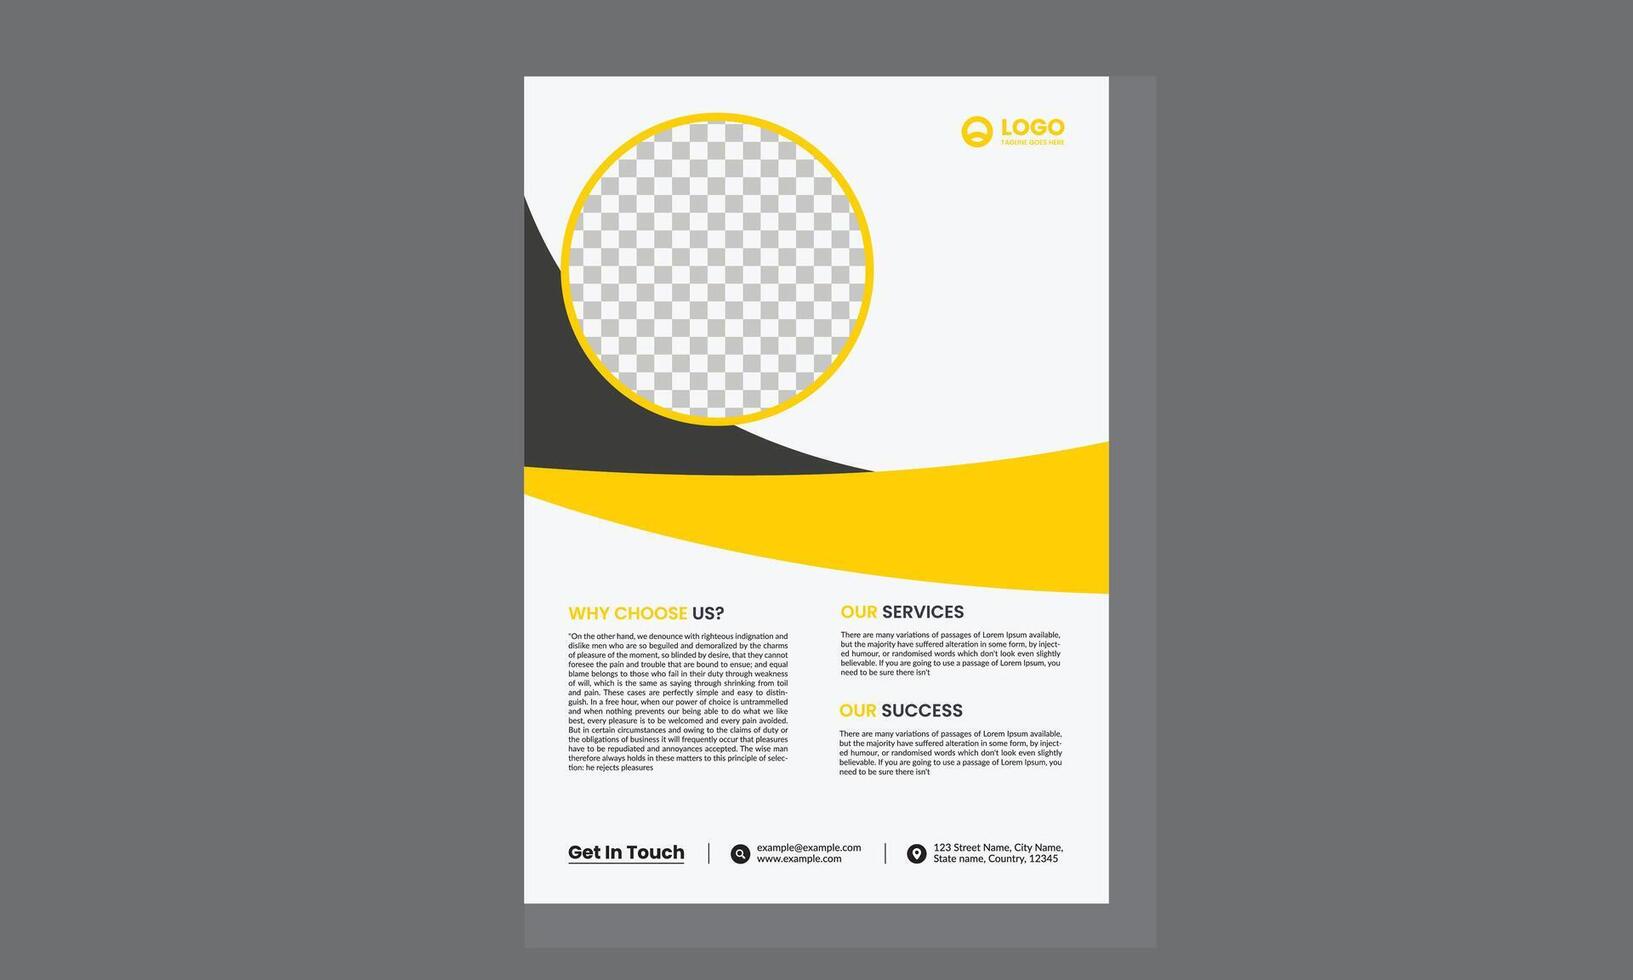 brochure ontwerp, Hoes modern lay-out, jaar- rapport, poster, folder in a4 met kleurrijk driehoeken vector